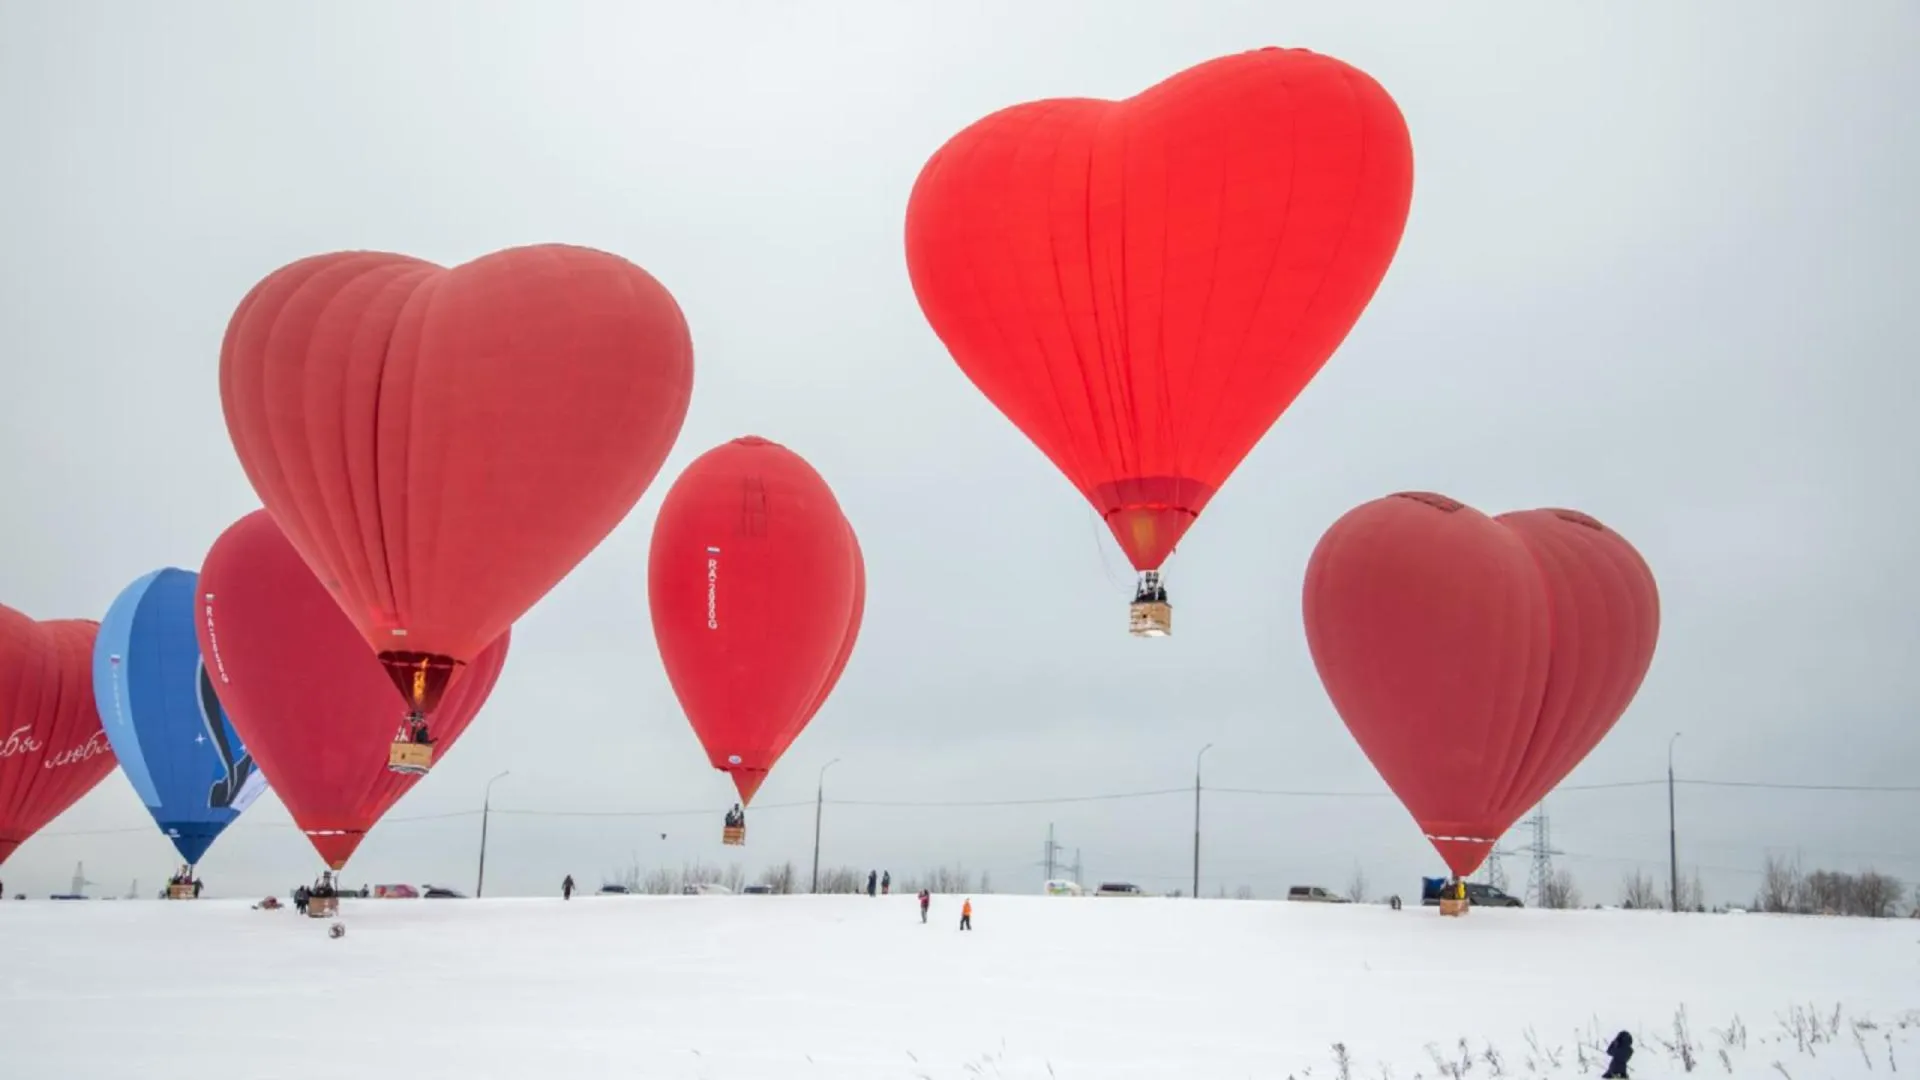 Второй фестиваль аэростатов в форме сердца пройдет в подмосковном Дмитрове